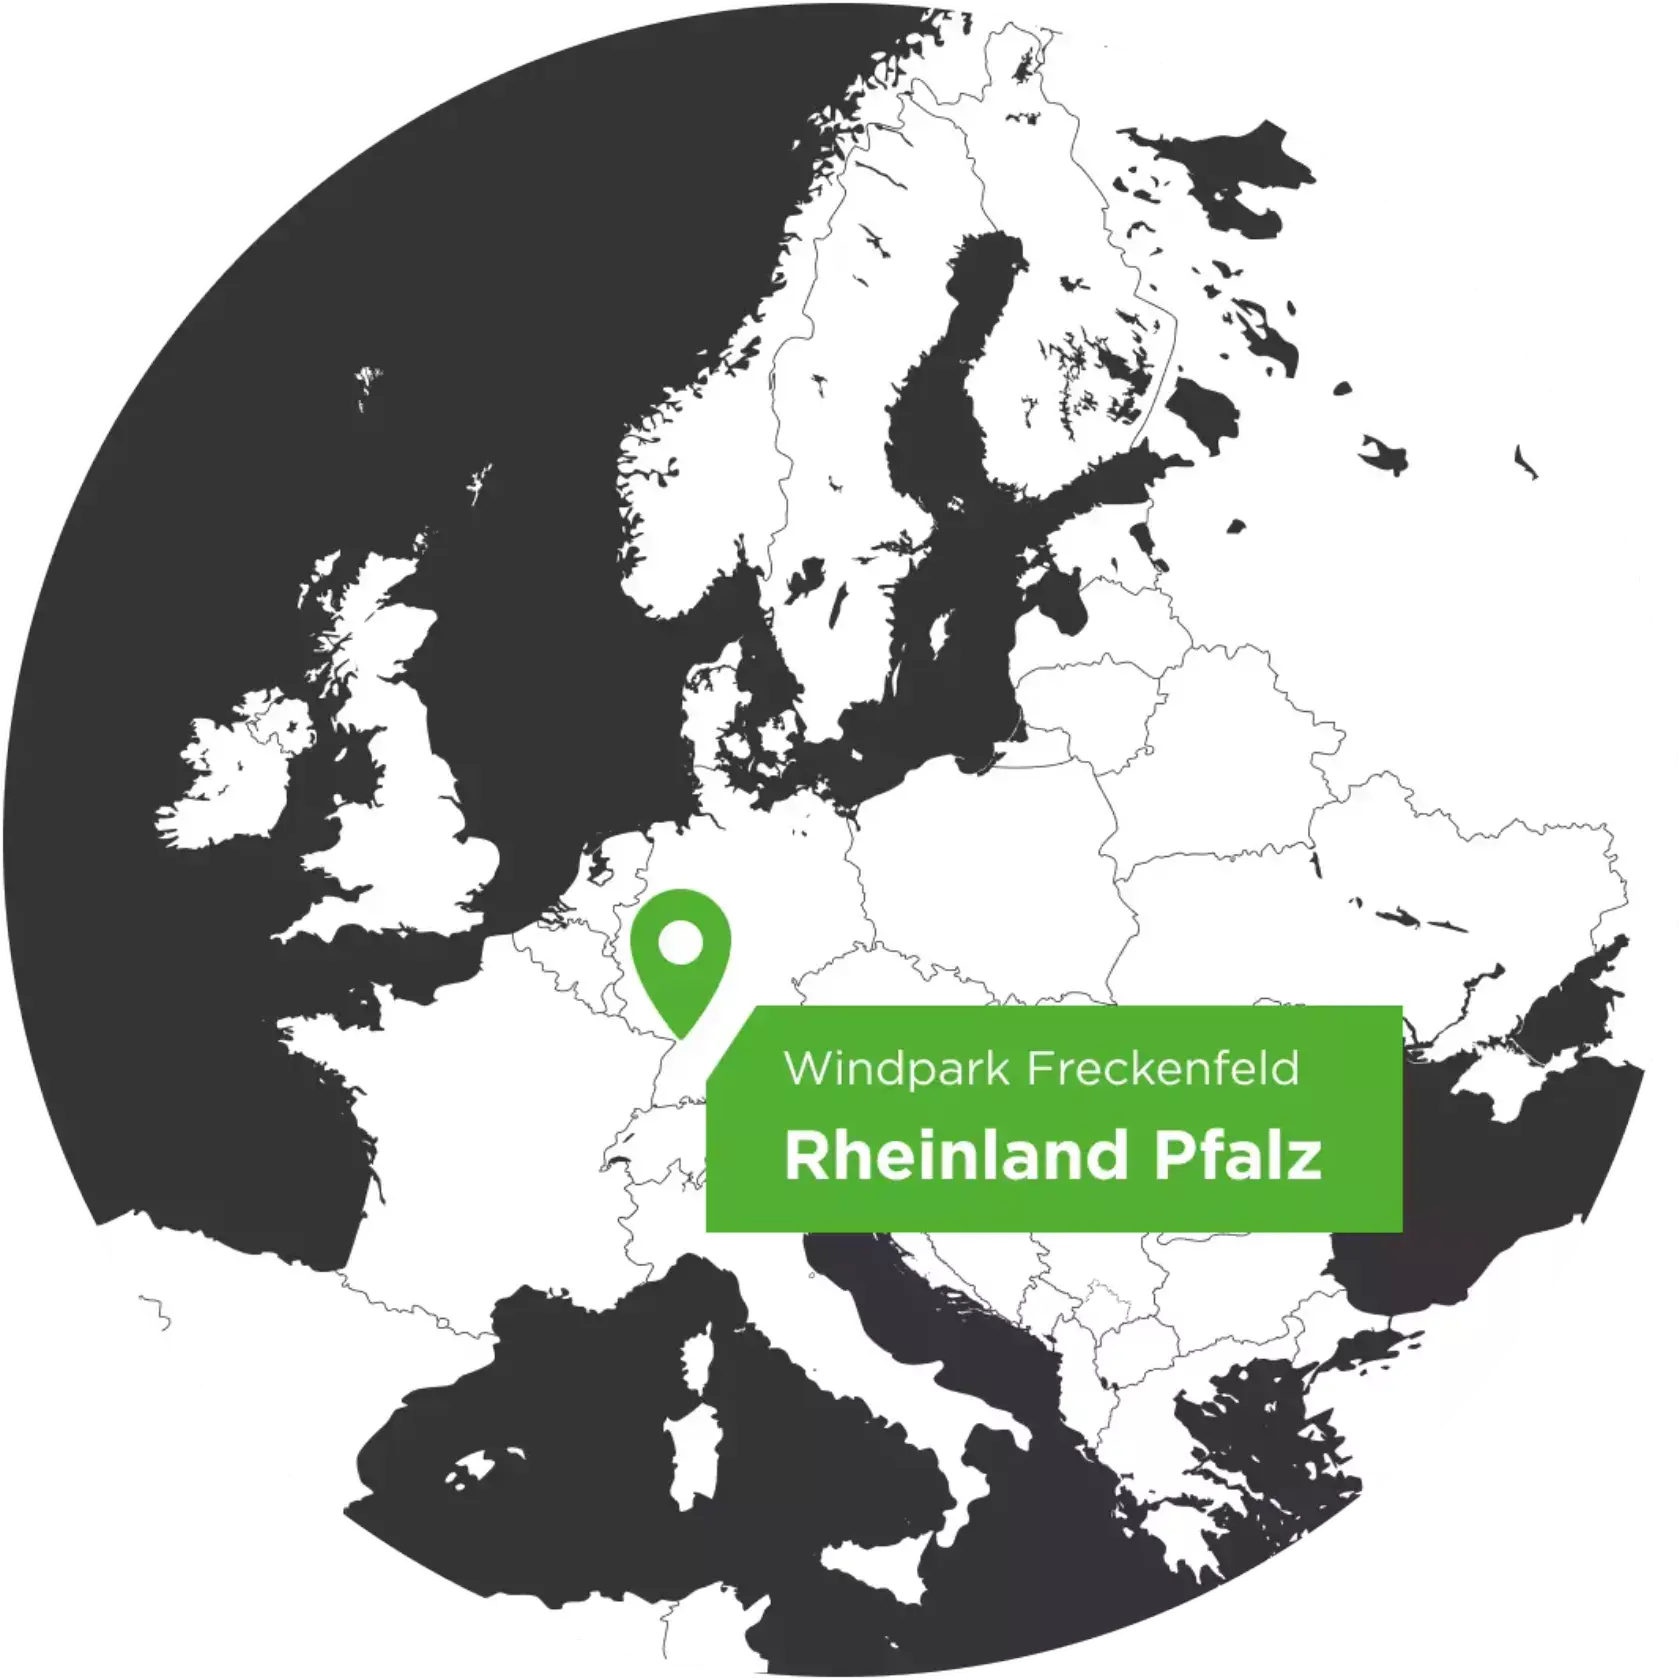 Europakarte mit dem Standortpfeil für den Windpark Freckenfeld